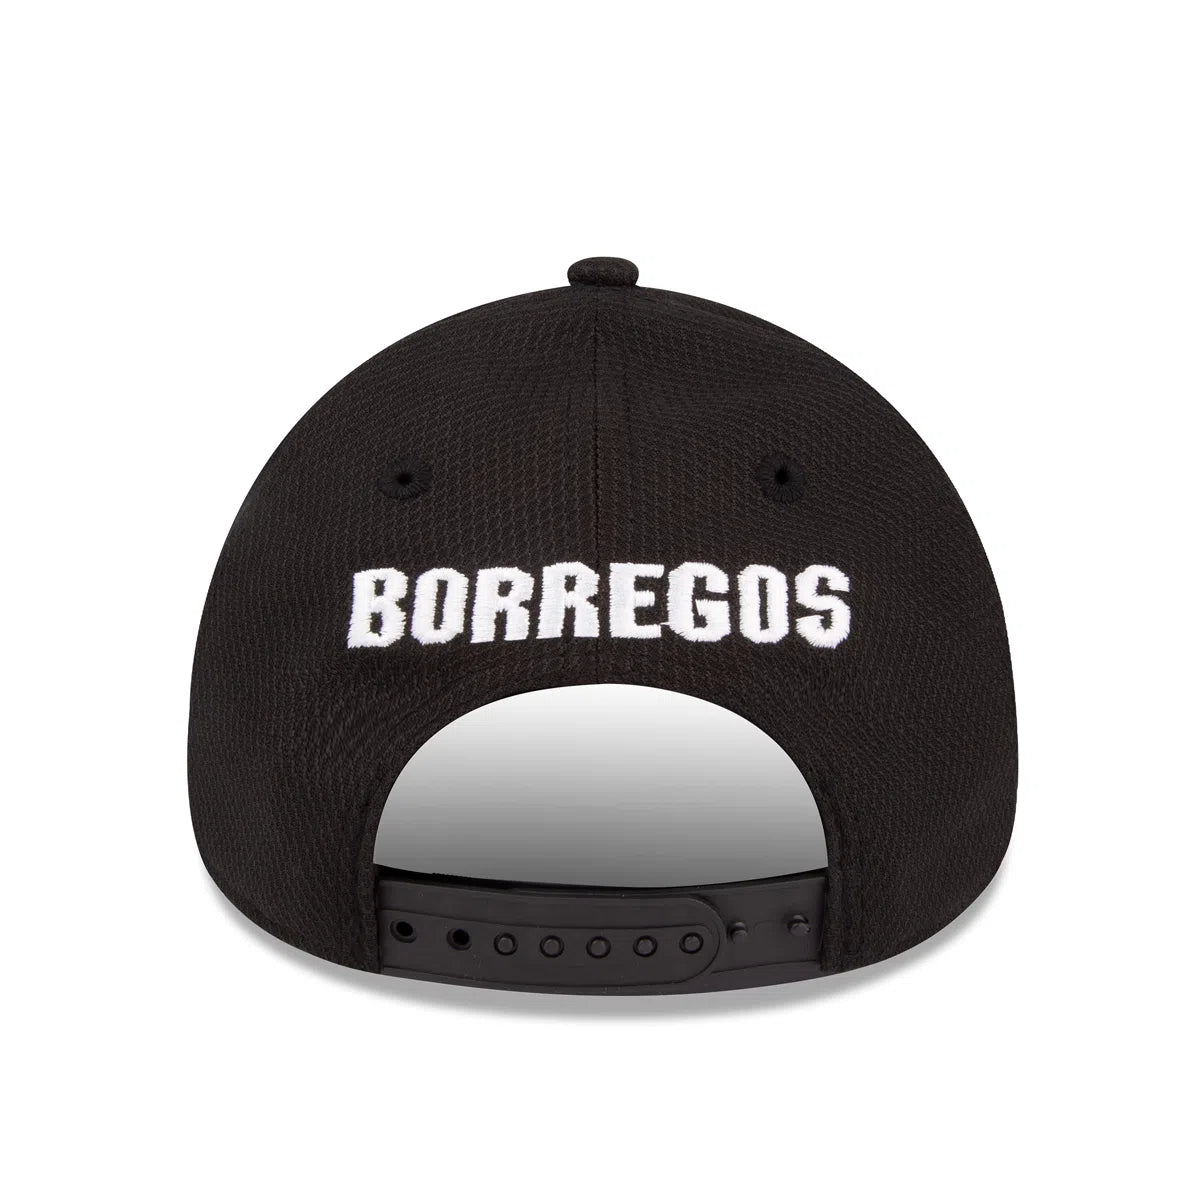 BORREGOS New Era Cap